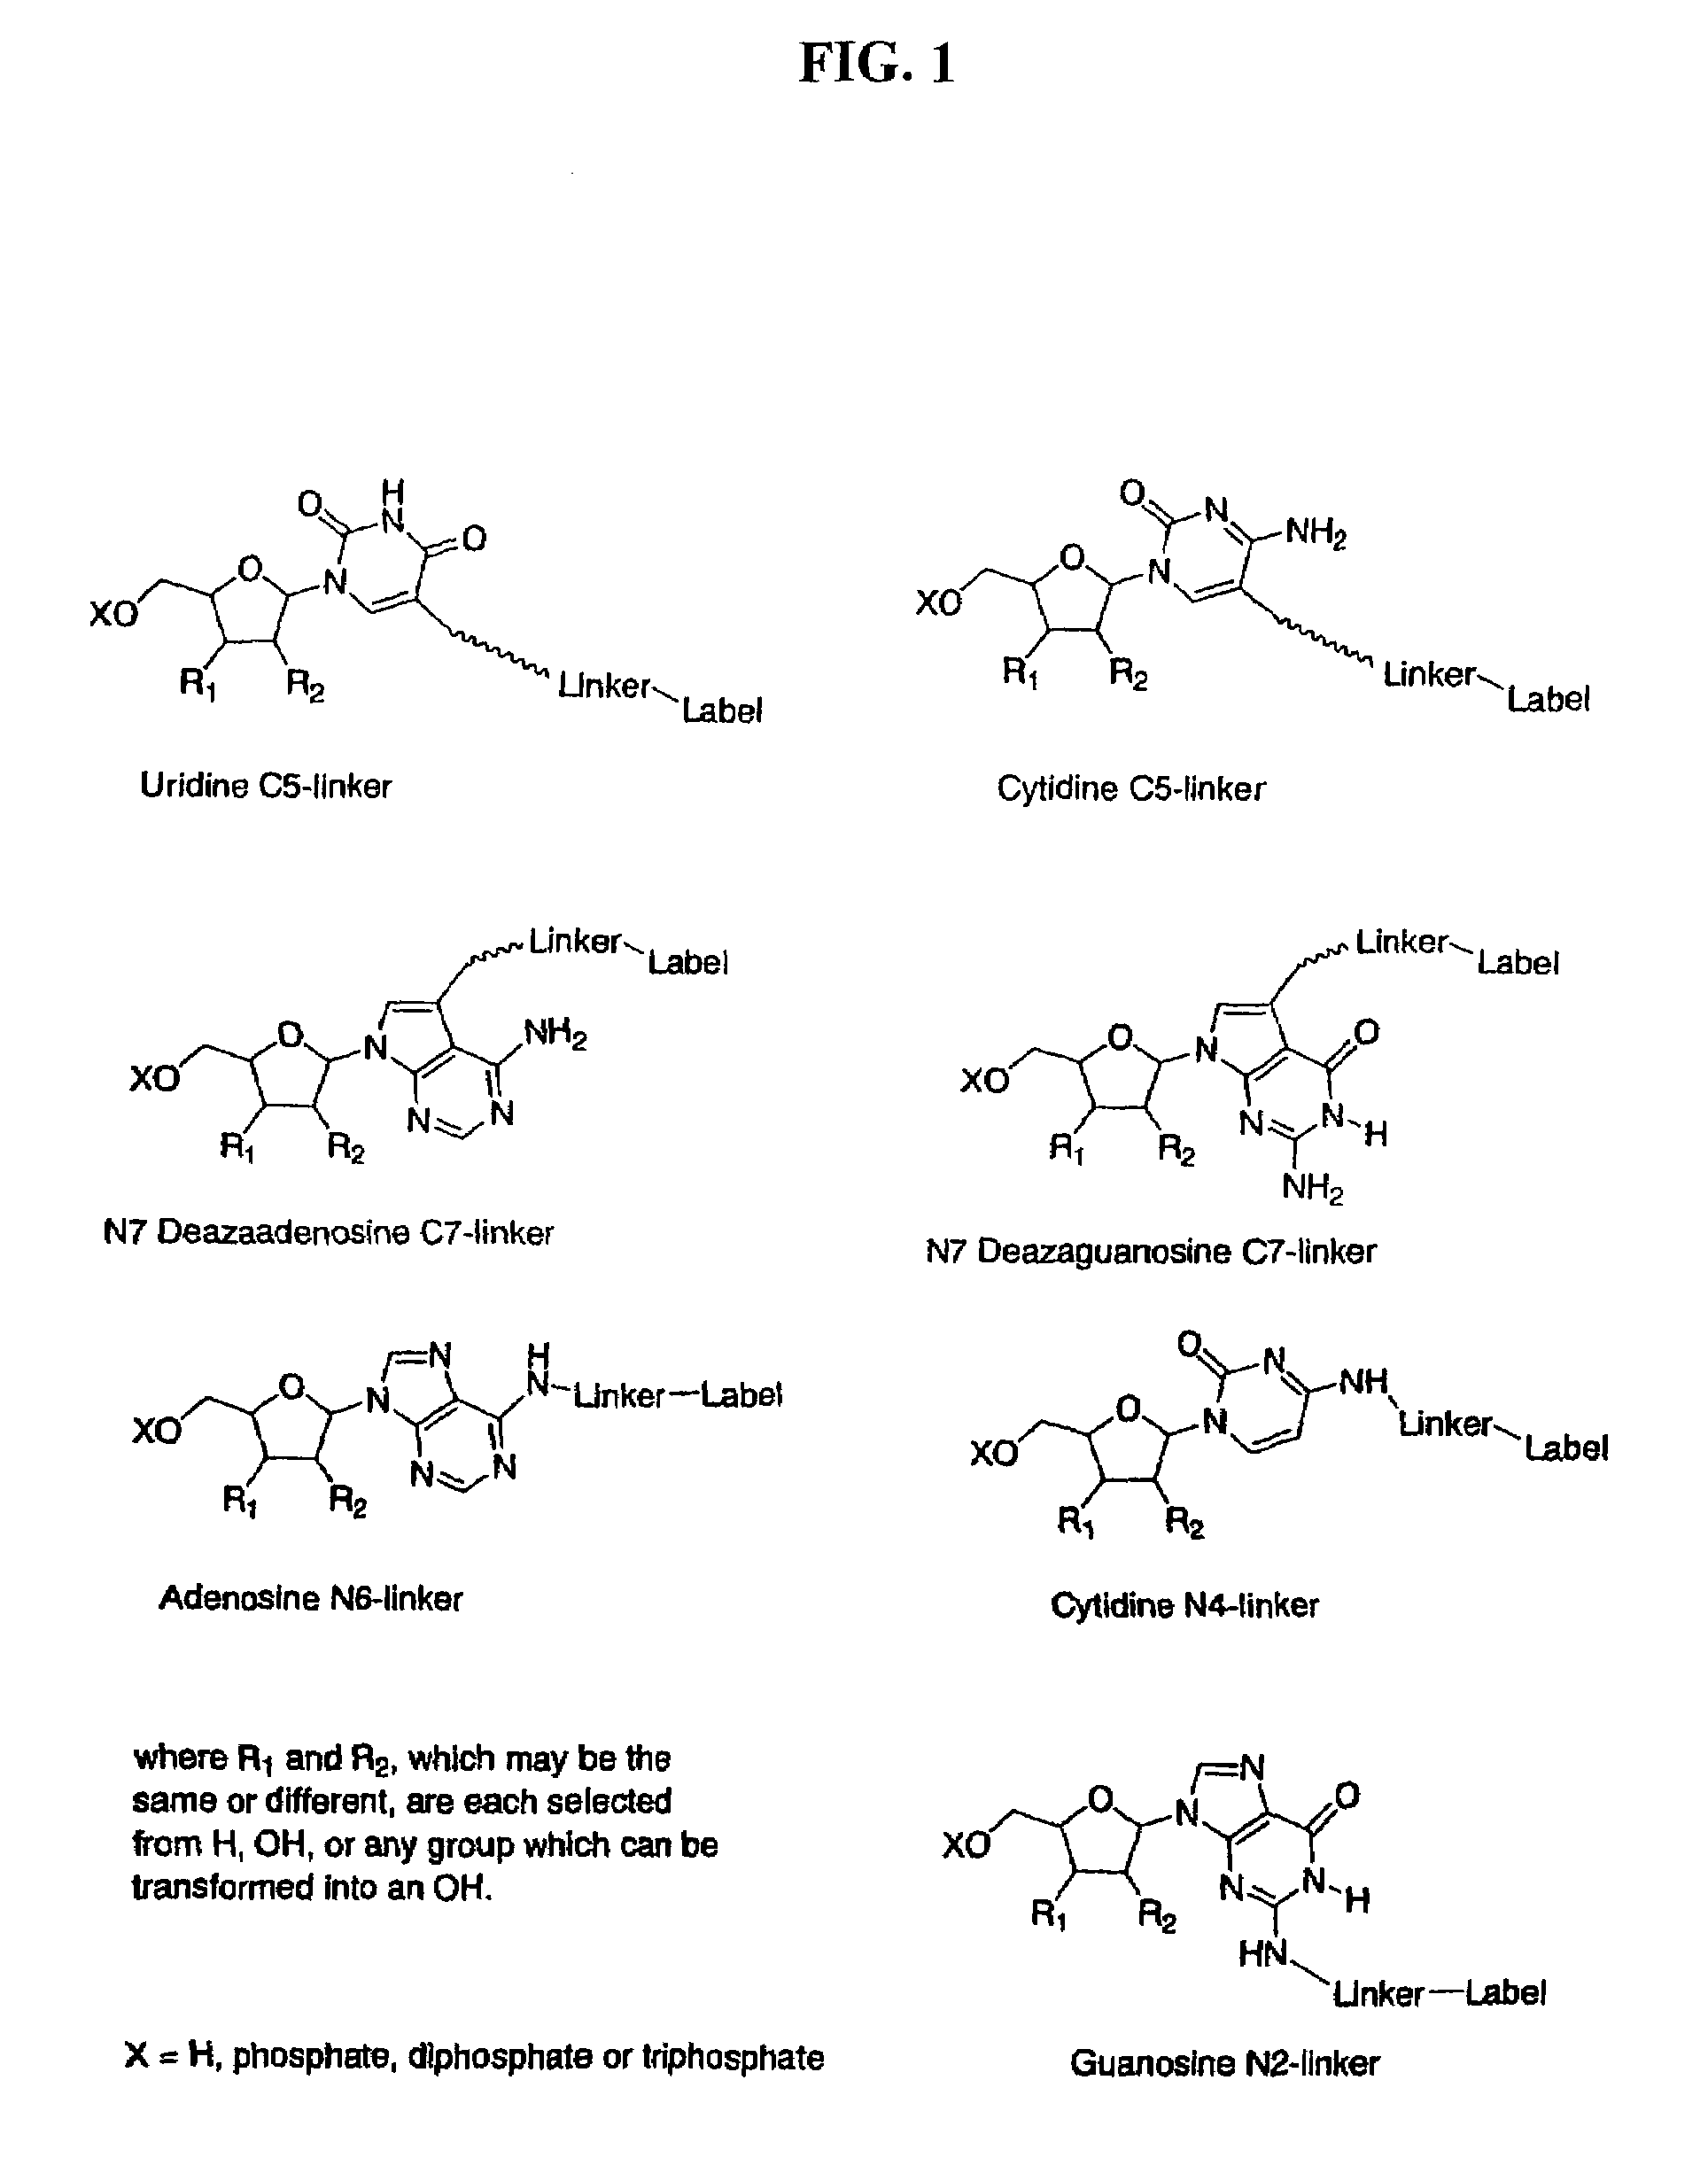 Labelled nucleotides